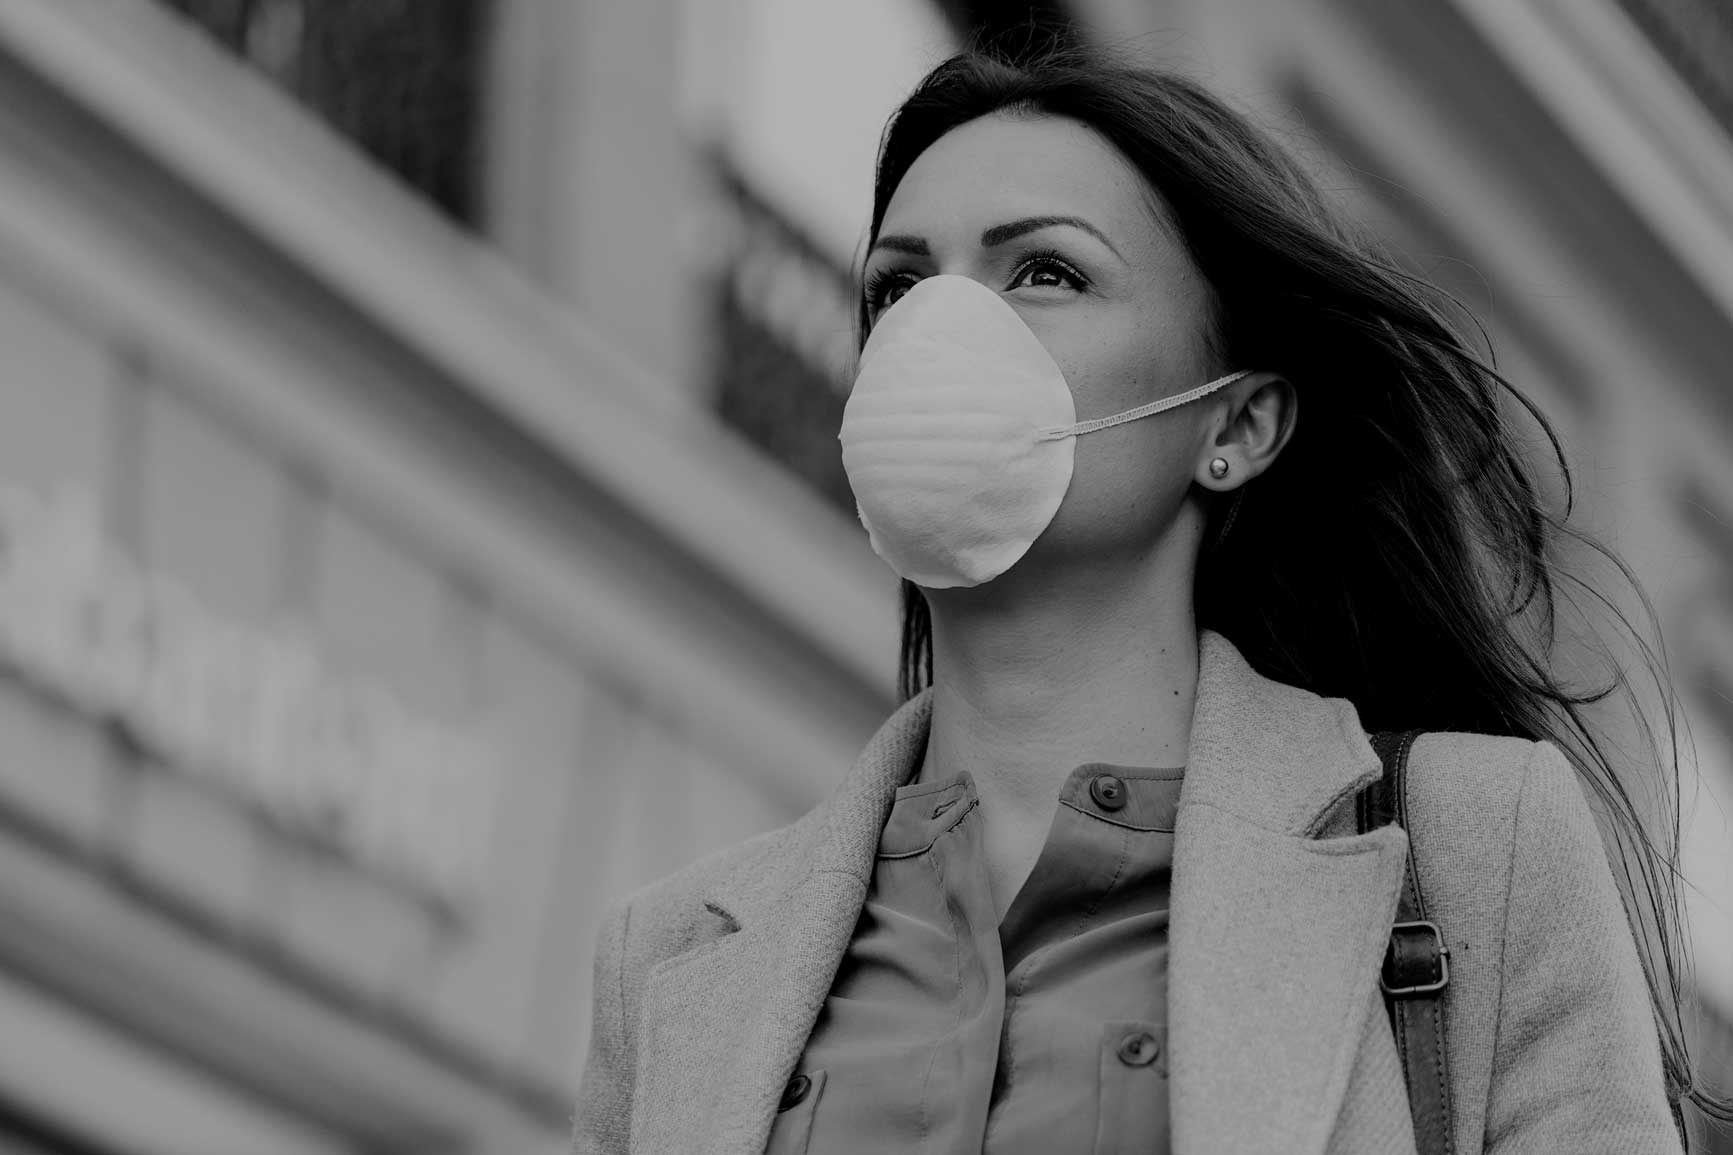 Woman walking down street in businesswear wearing a mask